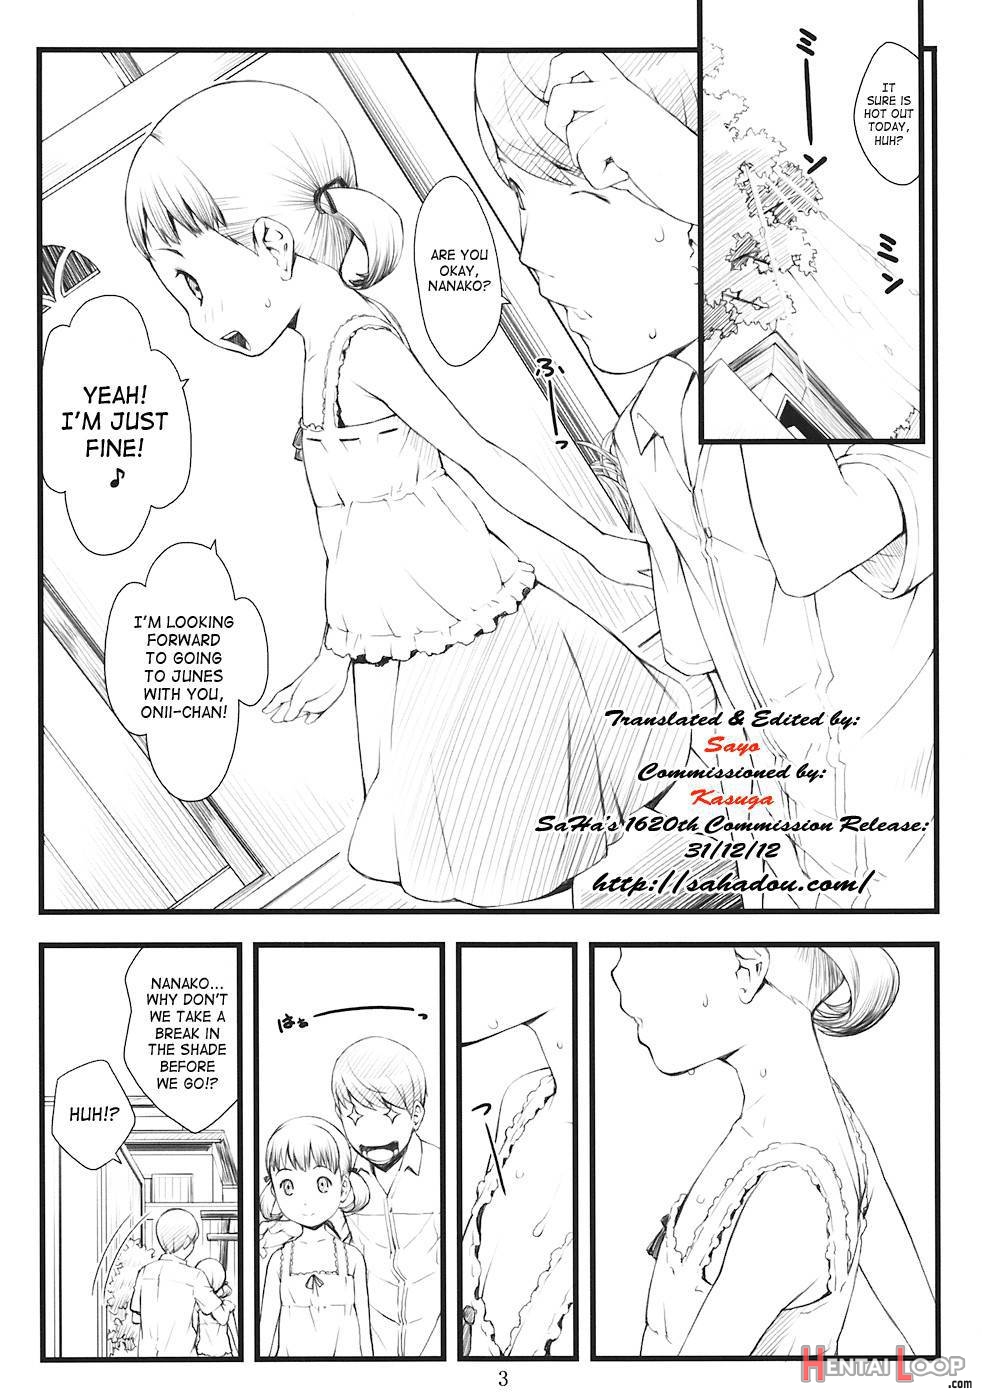 Everyday Nanako Life! 2 page 2